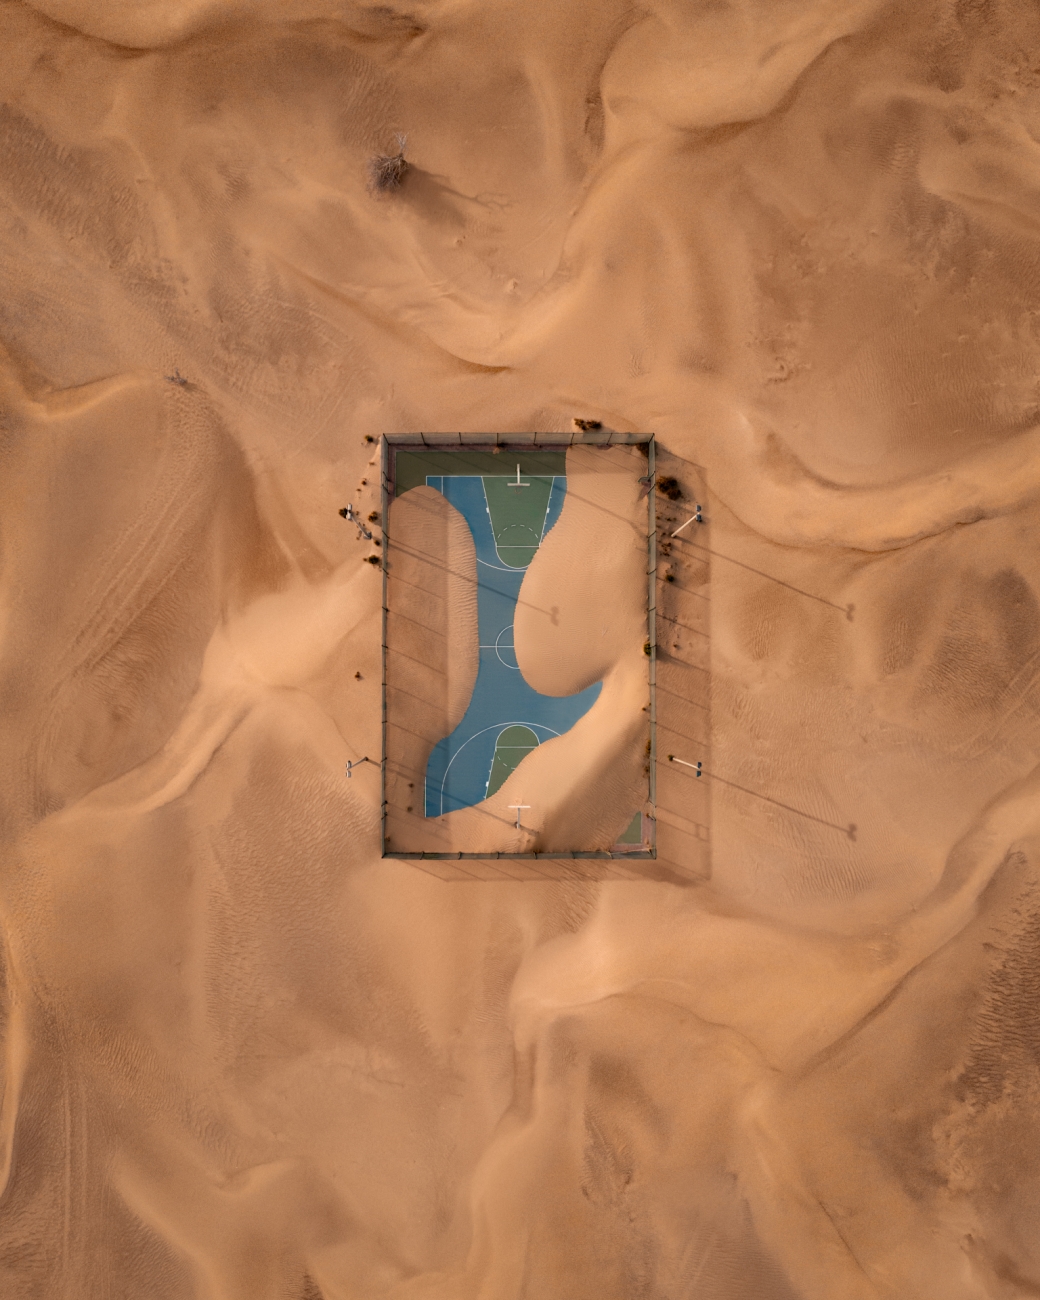 Επιλαχών στην κατηγορία Αστικό. Ενα γήπεδο μπάσκετ μετά από αμμοθύελλα στα Ηνωμένα Αραβικά Εμιράτα. Η άμμος καλύπτει κομμάτι του γηπέδου, αφήνοντας ωστόσο τον θεατή να πάρει μια ιδέα από τα αρχικά του σχήματα και χρώματα